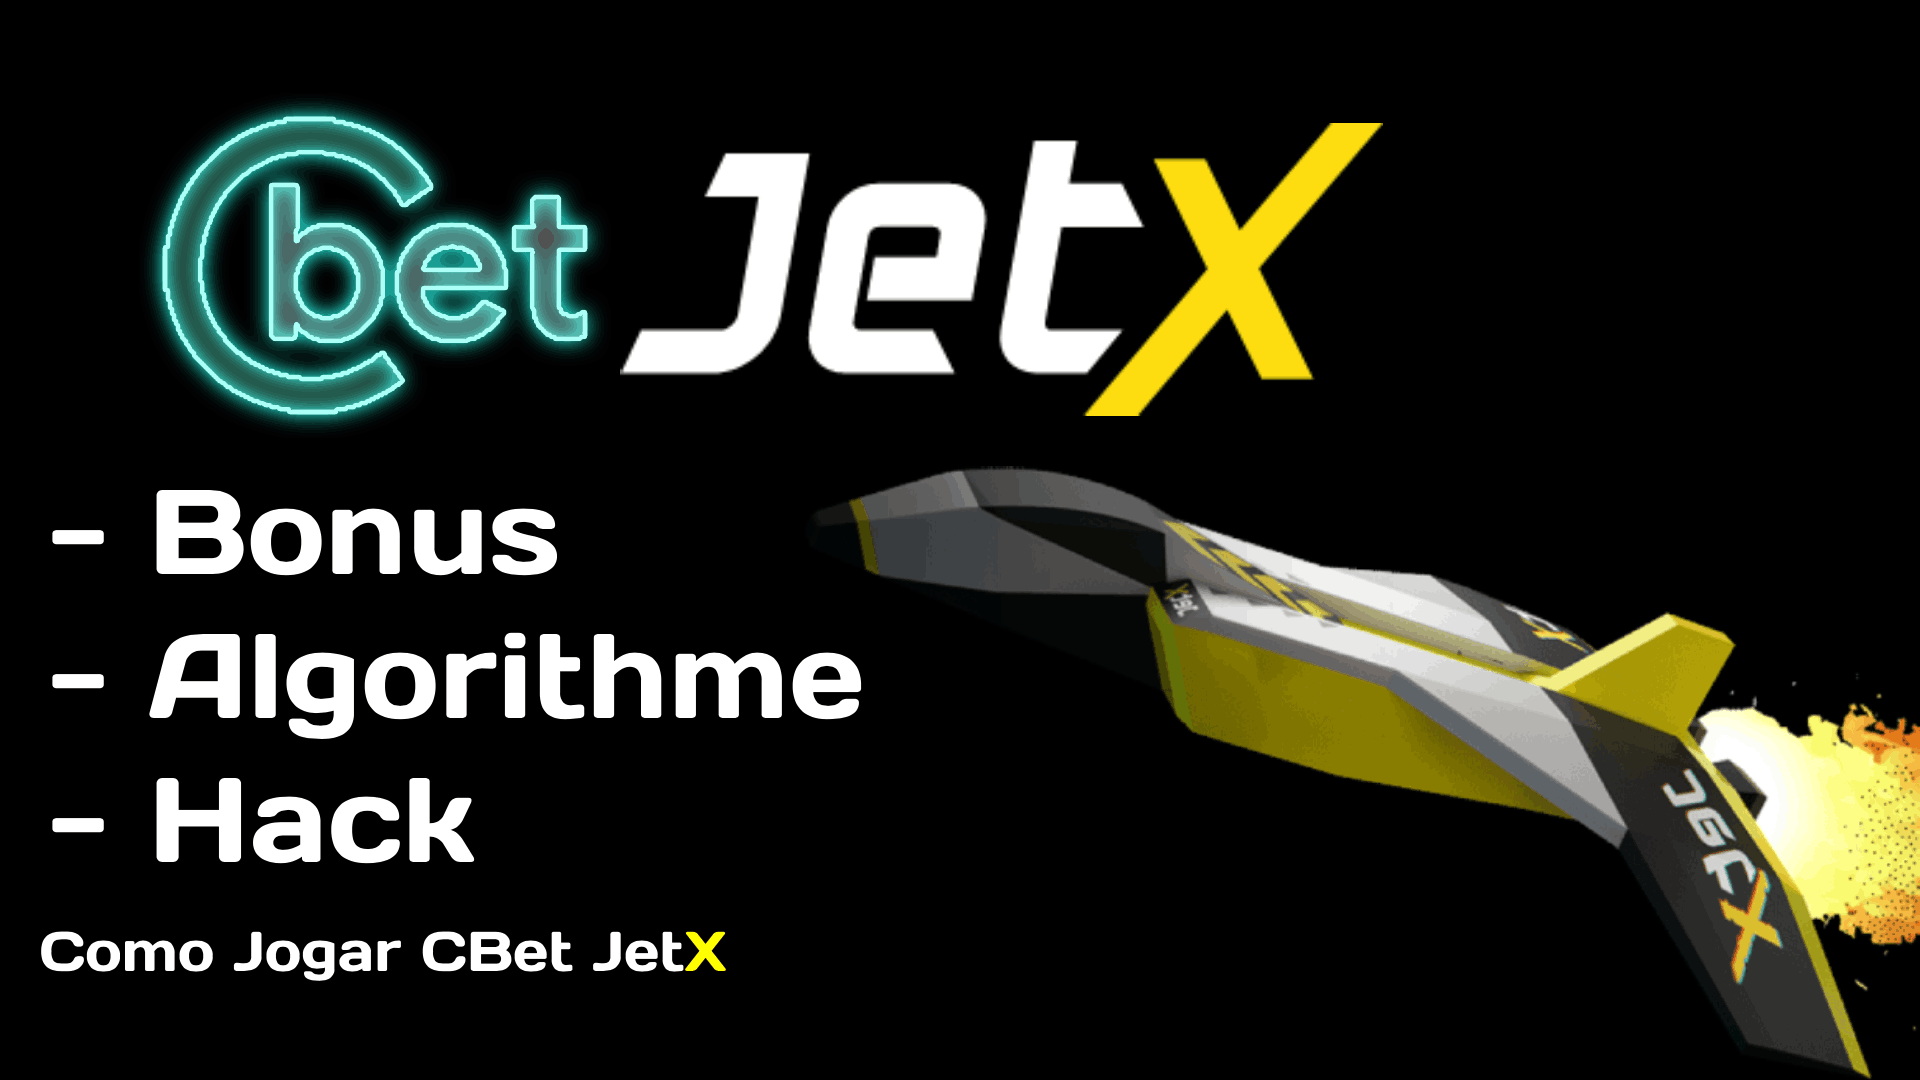 Jet X Cbet 1